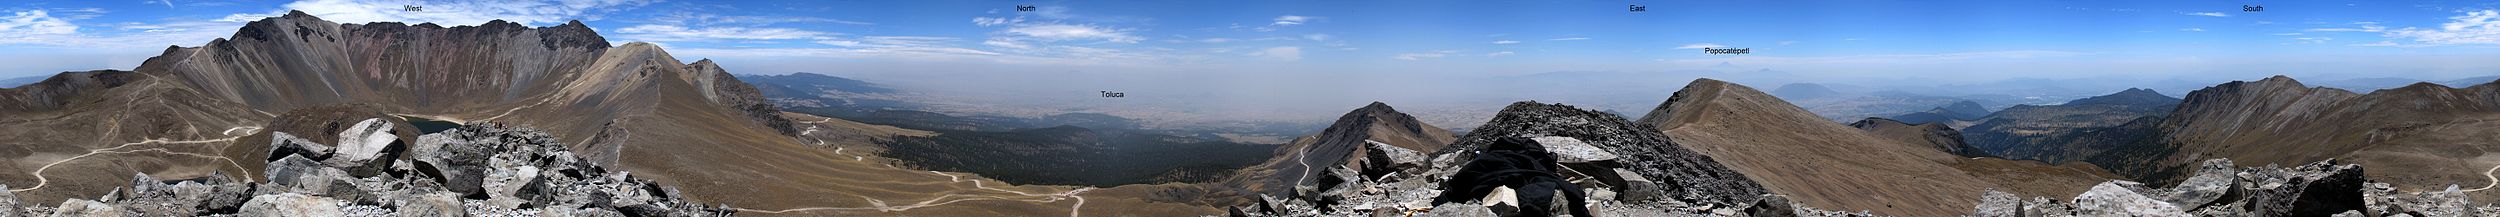 Panorámica de 360° desde la cima del Pico Humboldt del Nevado de Toluca. Se aprecian el Pico del Fraile a la izquierda y el Pico del Águila a la derecha de la leyenda "West".